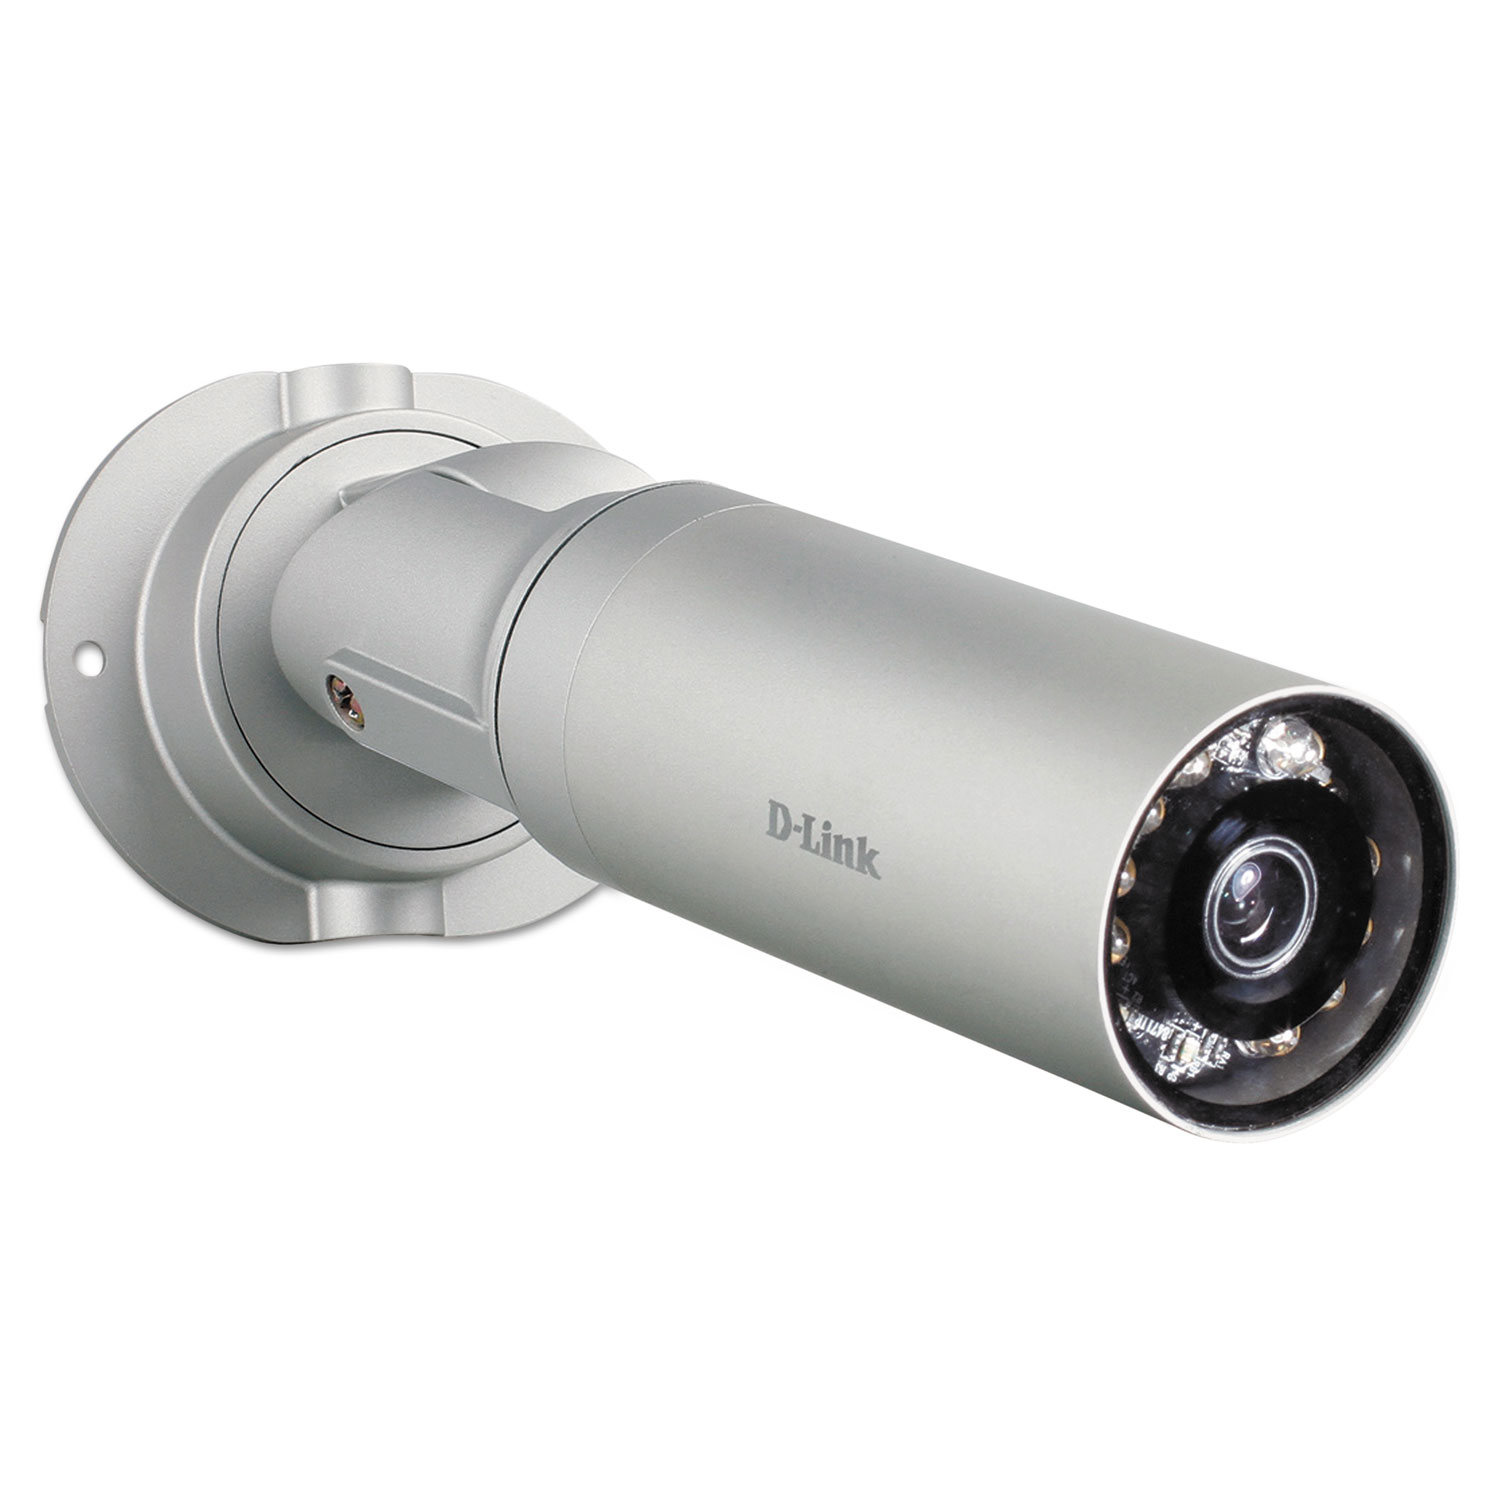 DCS-7010L HD Mini Bullet Outdoor Surveillance Camera